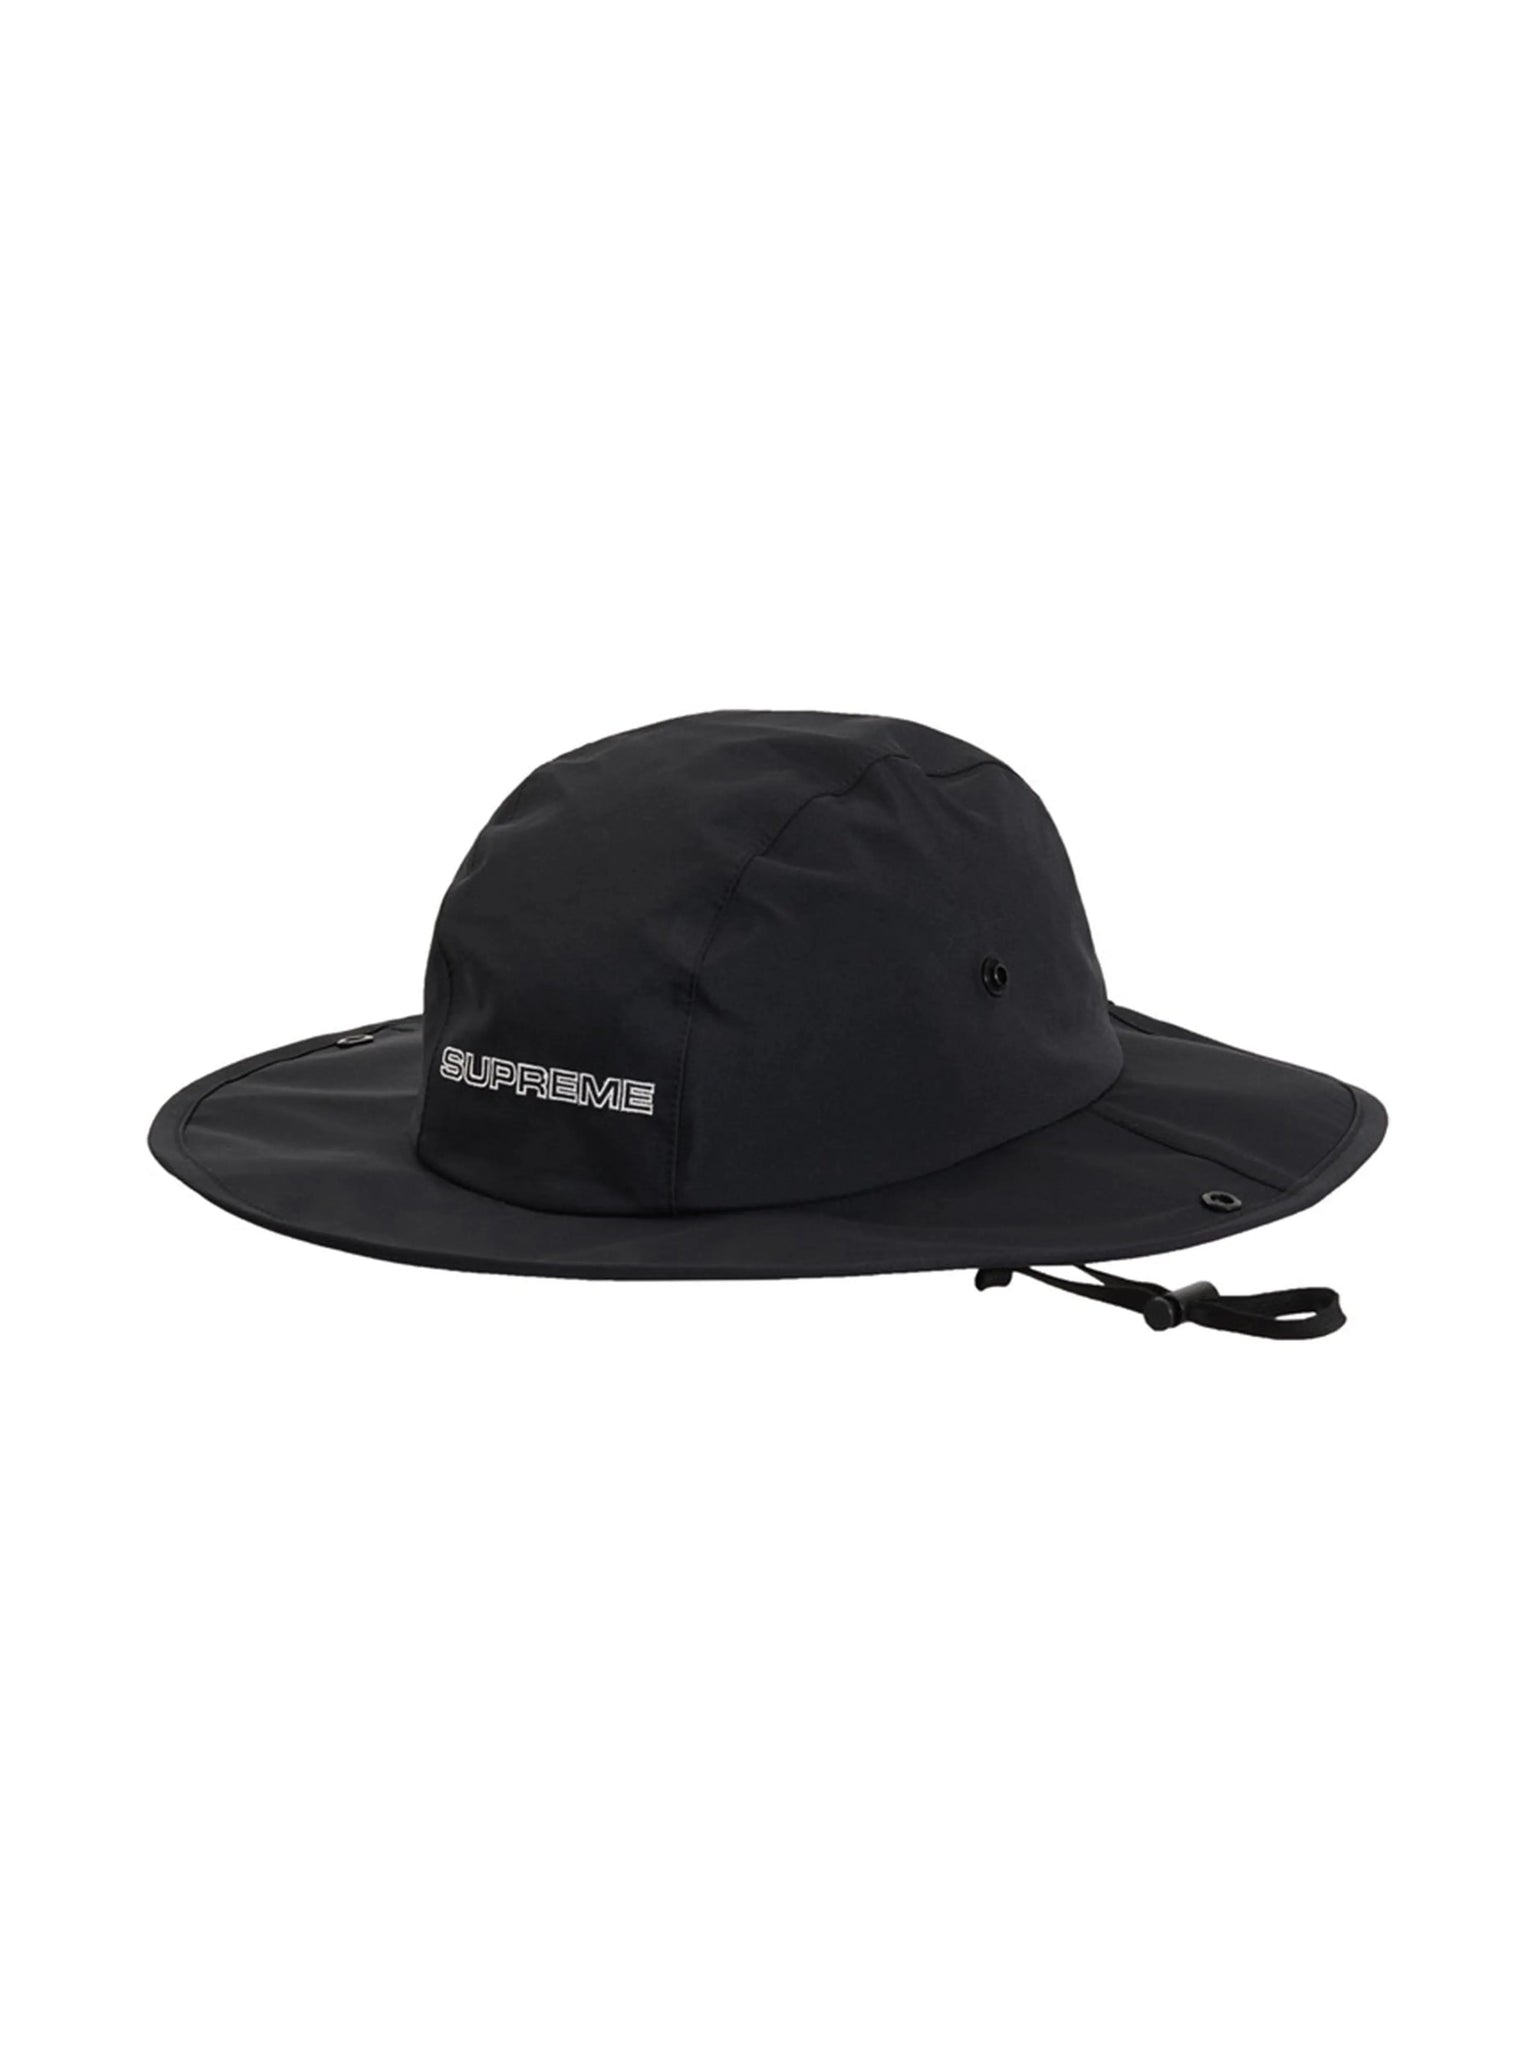 Supreme GORE-TEX Rain Hat Black Supreme